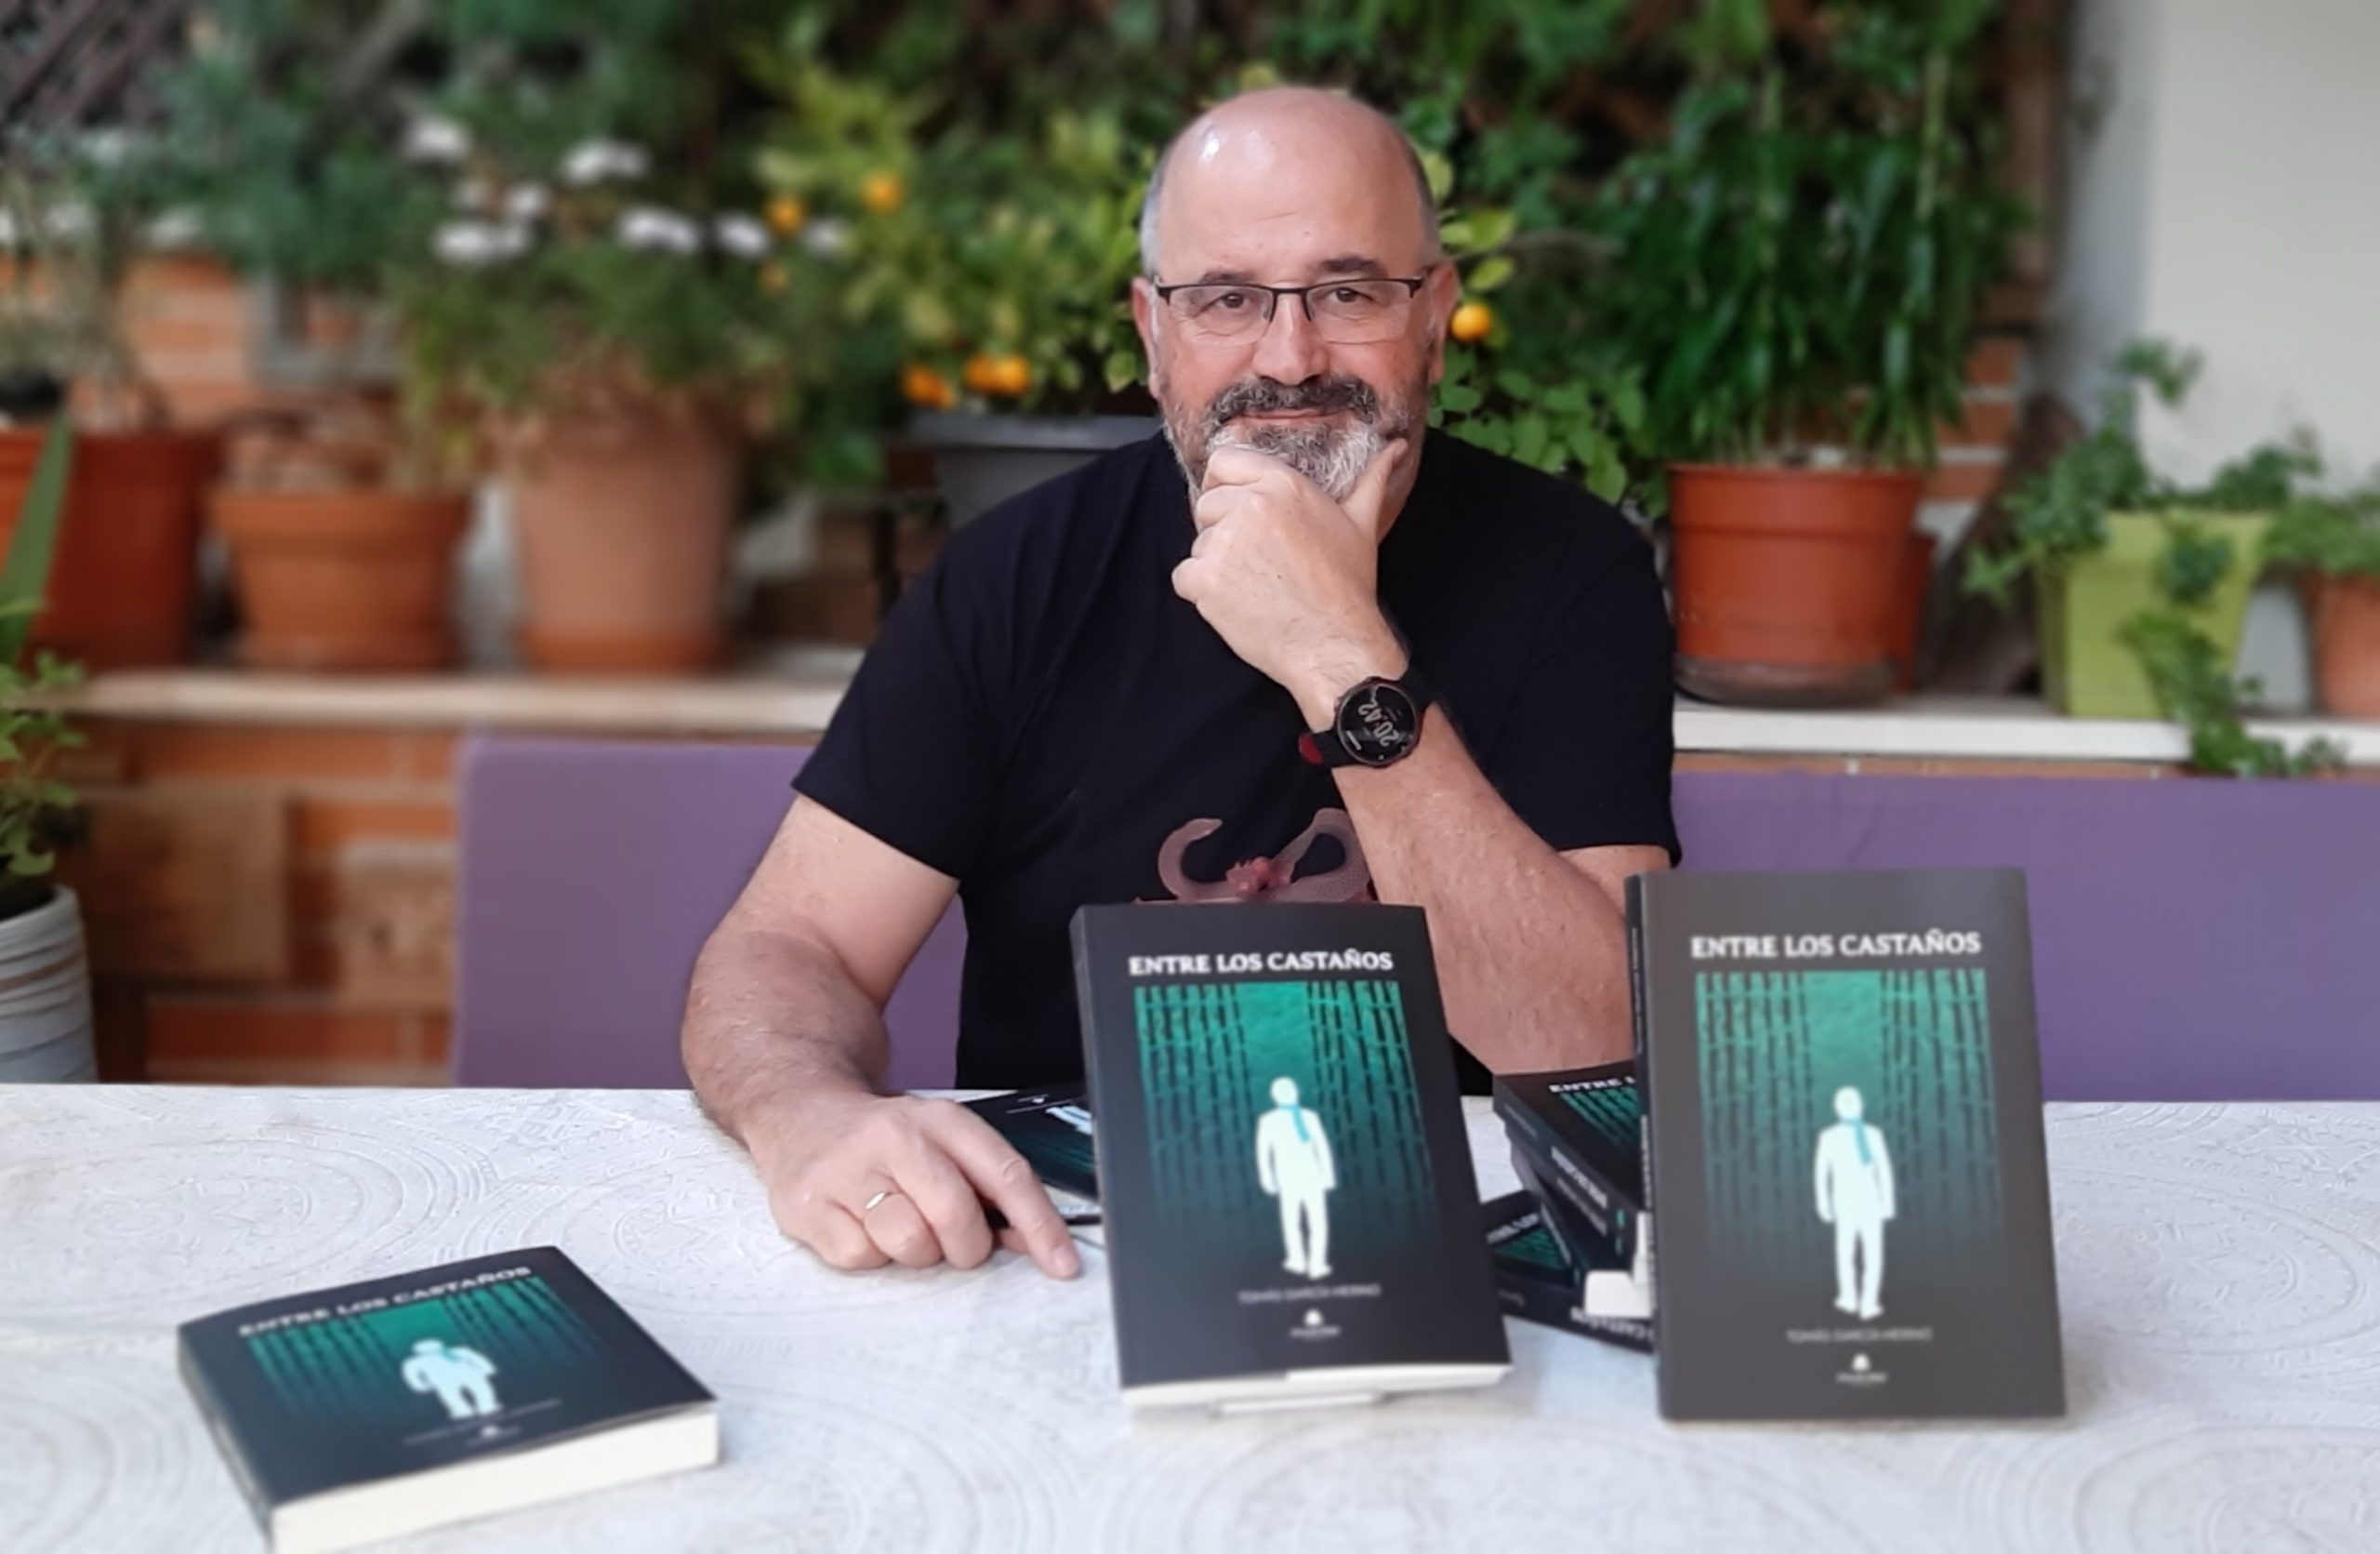 Entrevistamos al escritor Tomás García Merino, por la publicación de su obra “Entre los castaños”